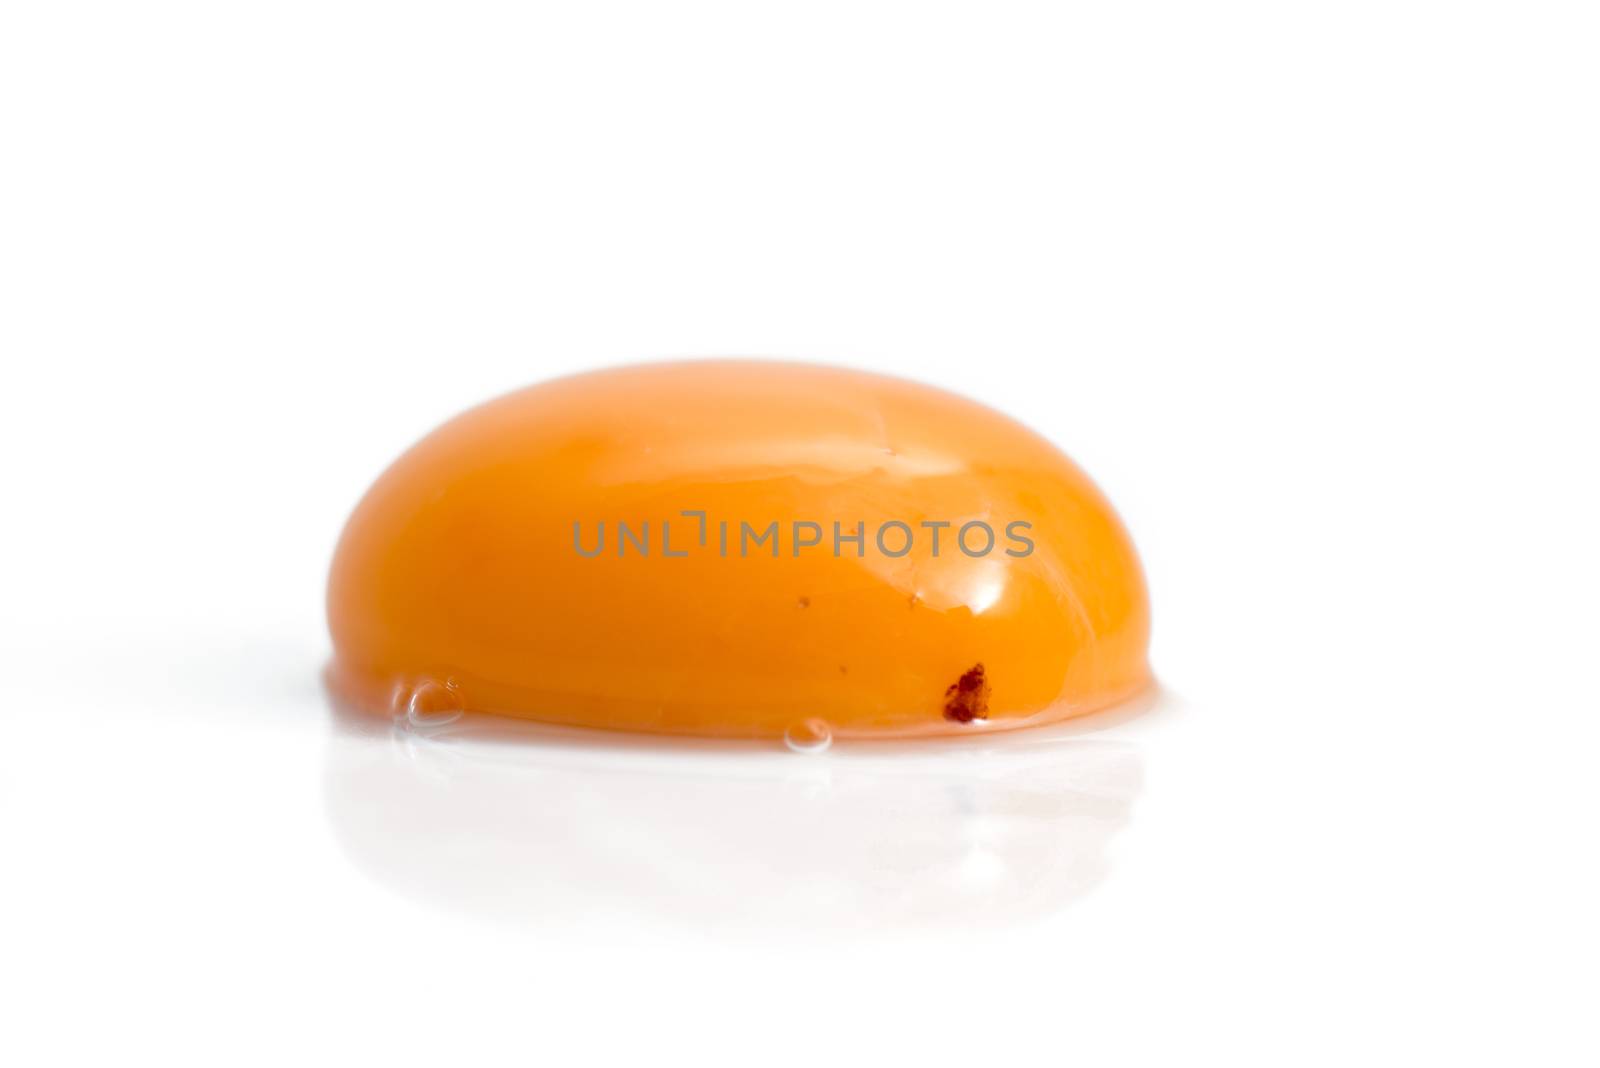 raw egg yolk isolated on white background